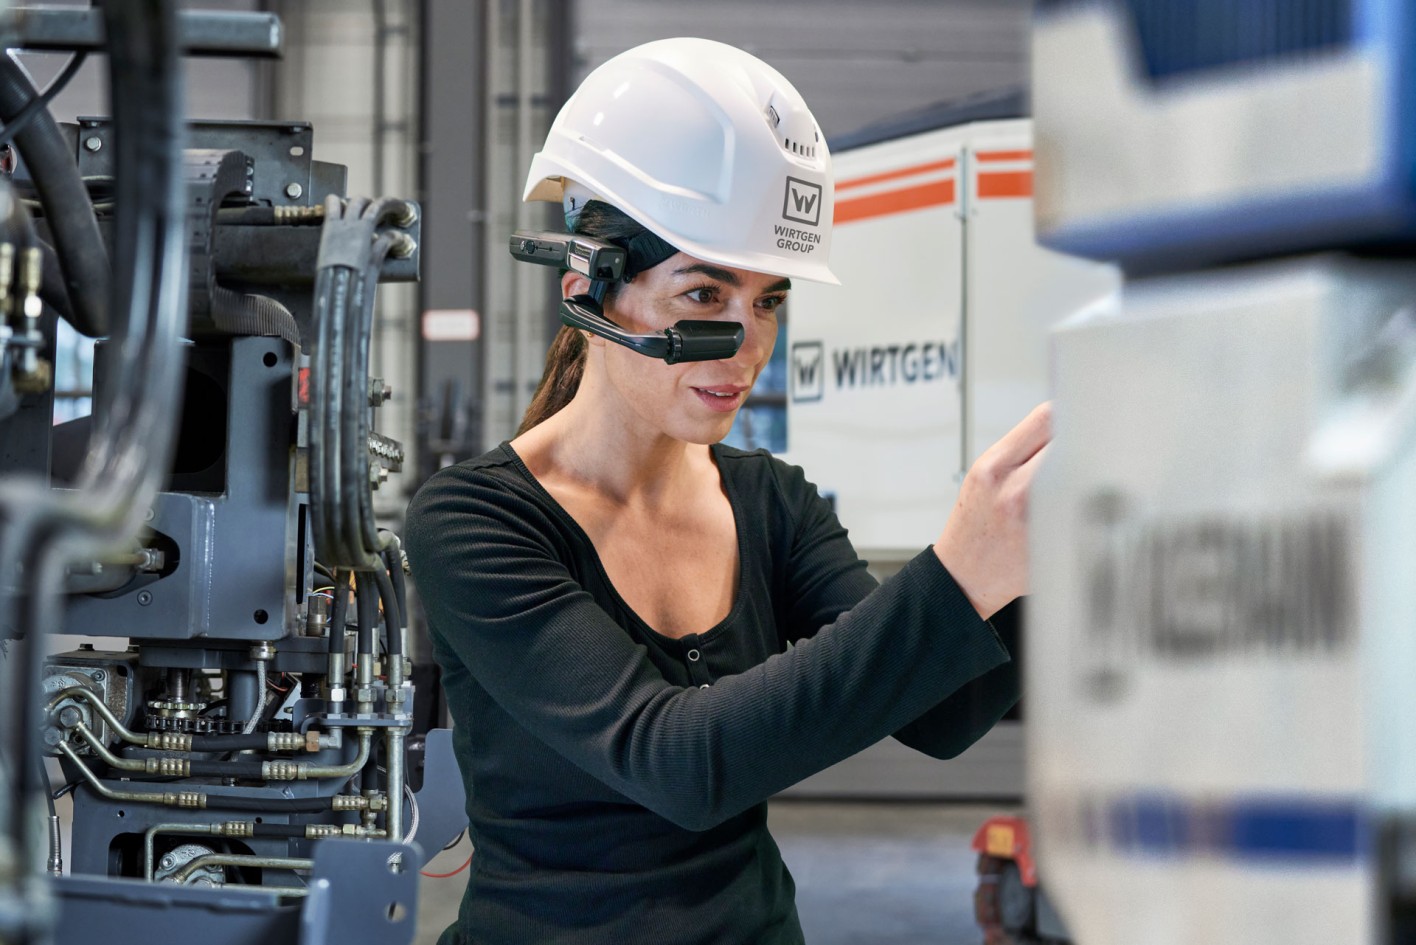 Uma mecânica usa os óculos “Expert Assist” enquanto trabalha em uma máquina.